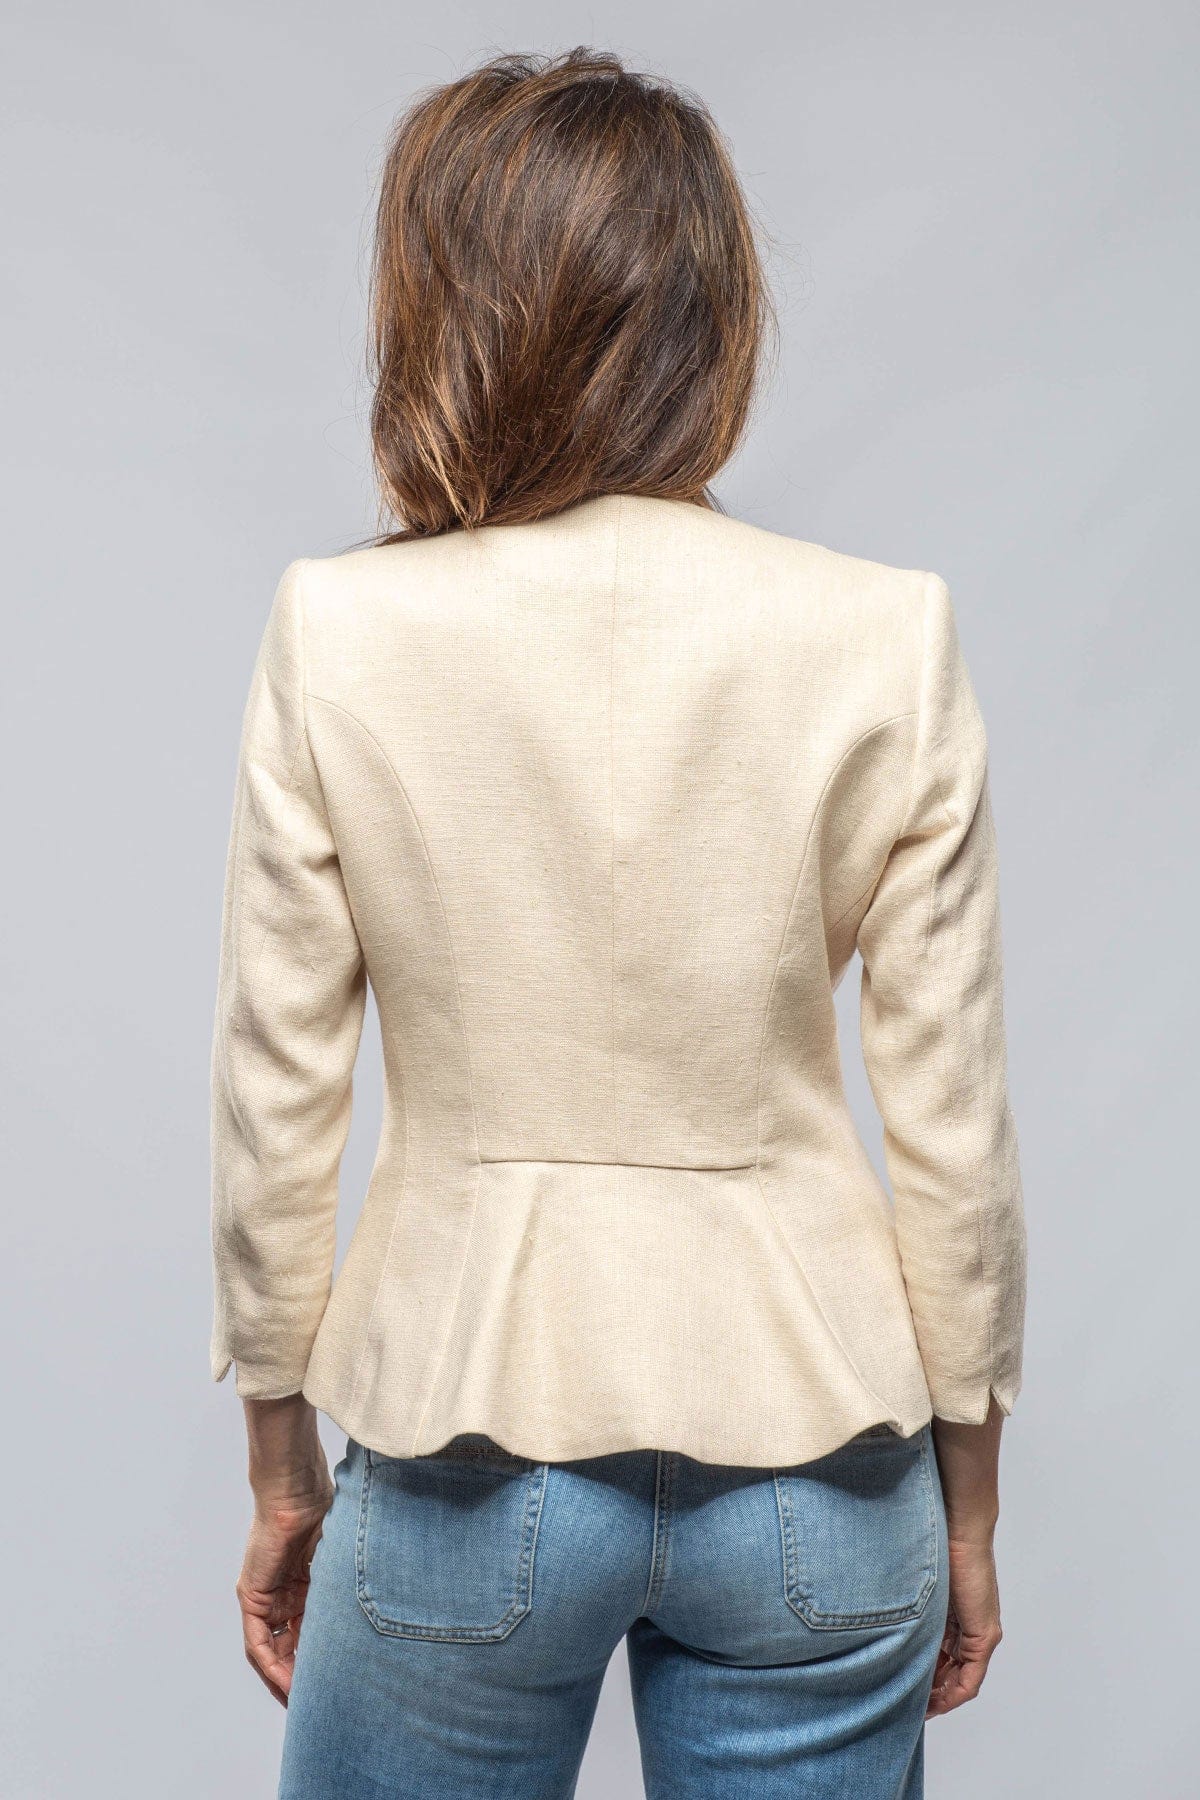 T.ba Annalisa Linen Jacket Ladies - Tailored